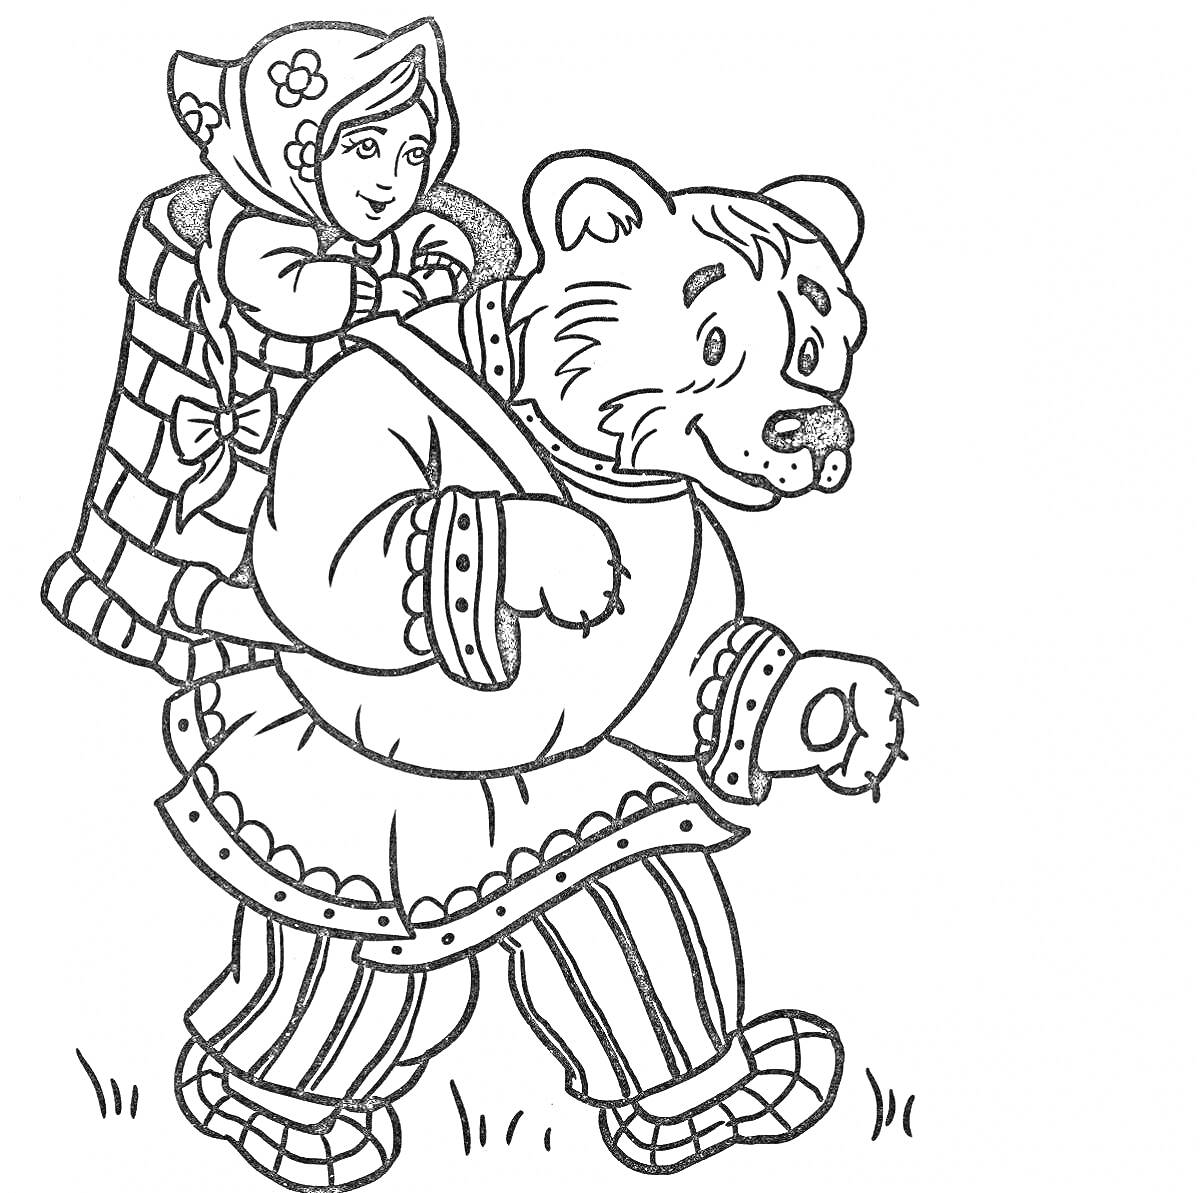 Раскраска Девочка в кокошнике сидит в корзинке за спиной медведя в рубахе и штанах